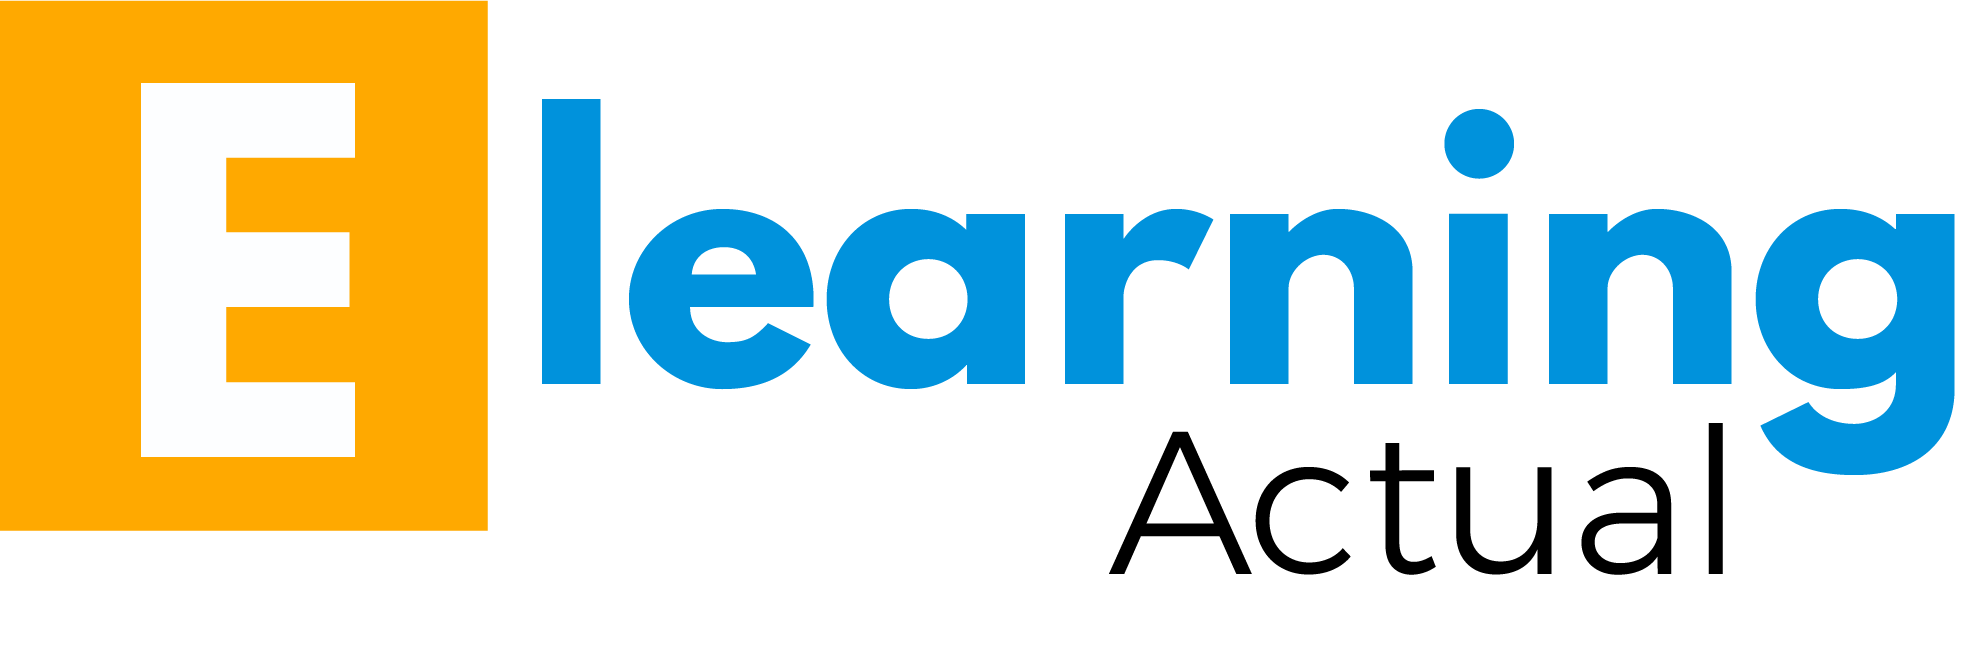 eLearningActual_logo_(coaching virtual)